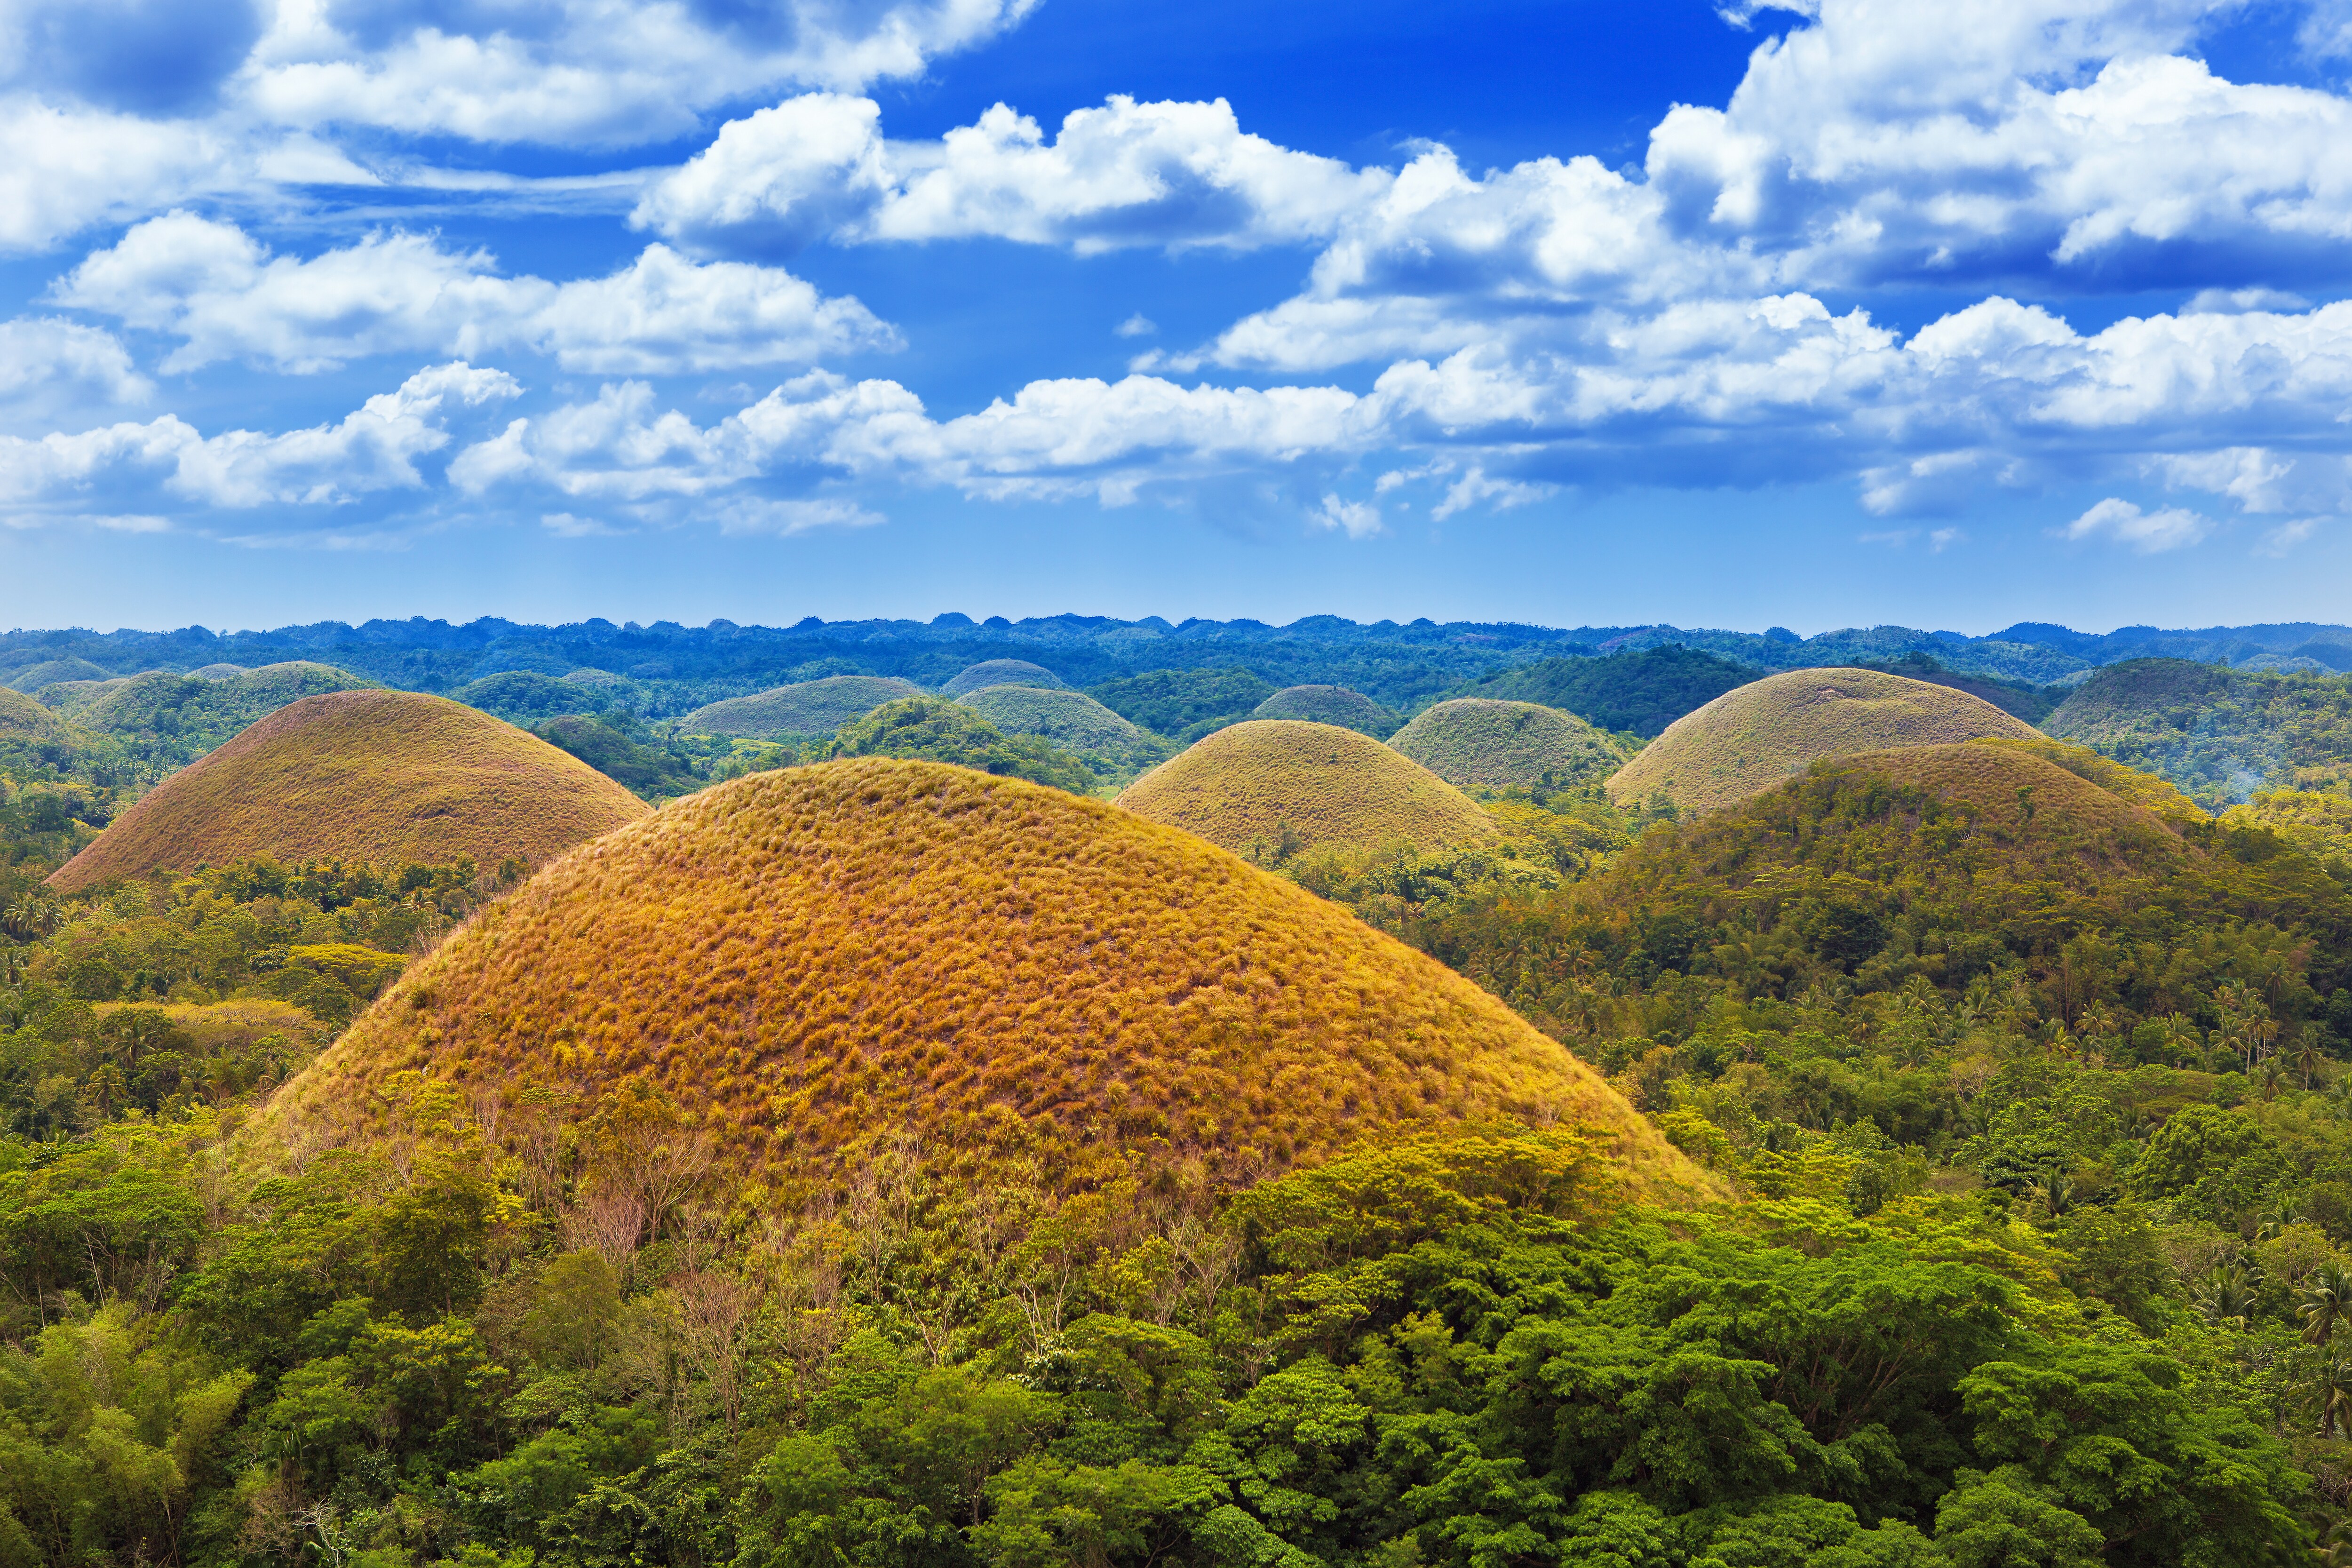 Огромные холмы. Шоколадные холмы Бохол. Остров Бохоль на Филиппинах. Шоколадные холмы Филиппины. Шоколадные холмы острова Бохоль, Филиппины.